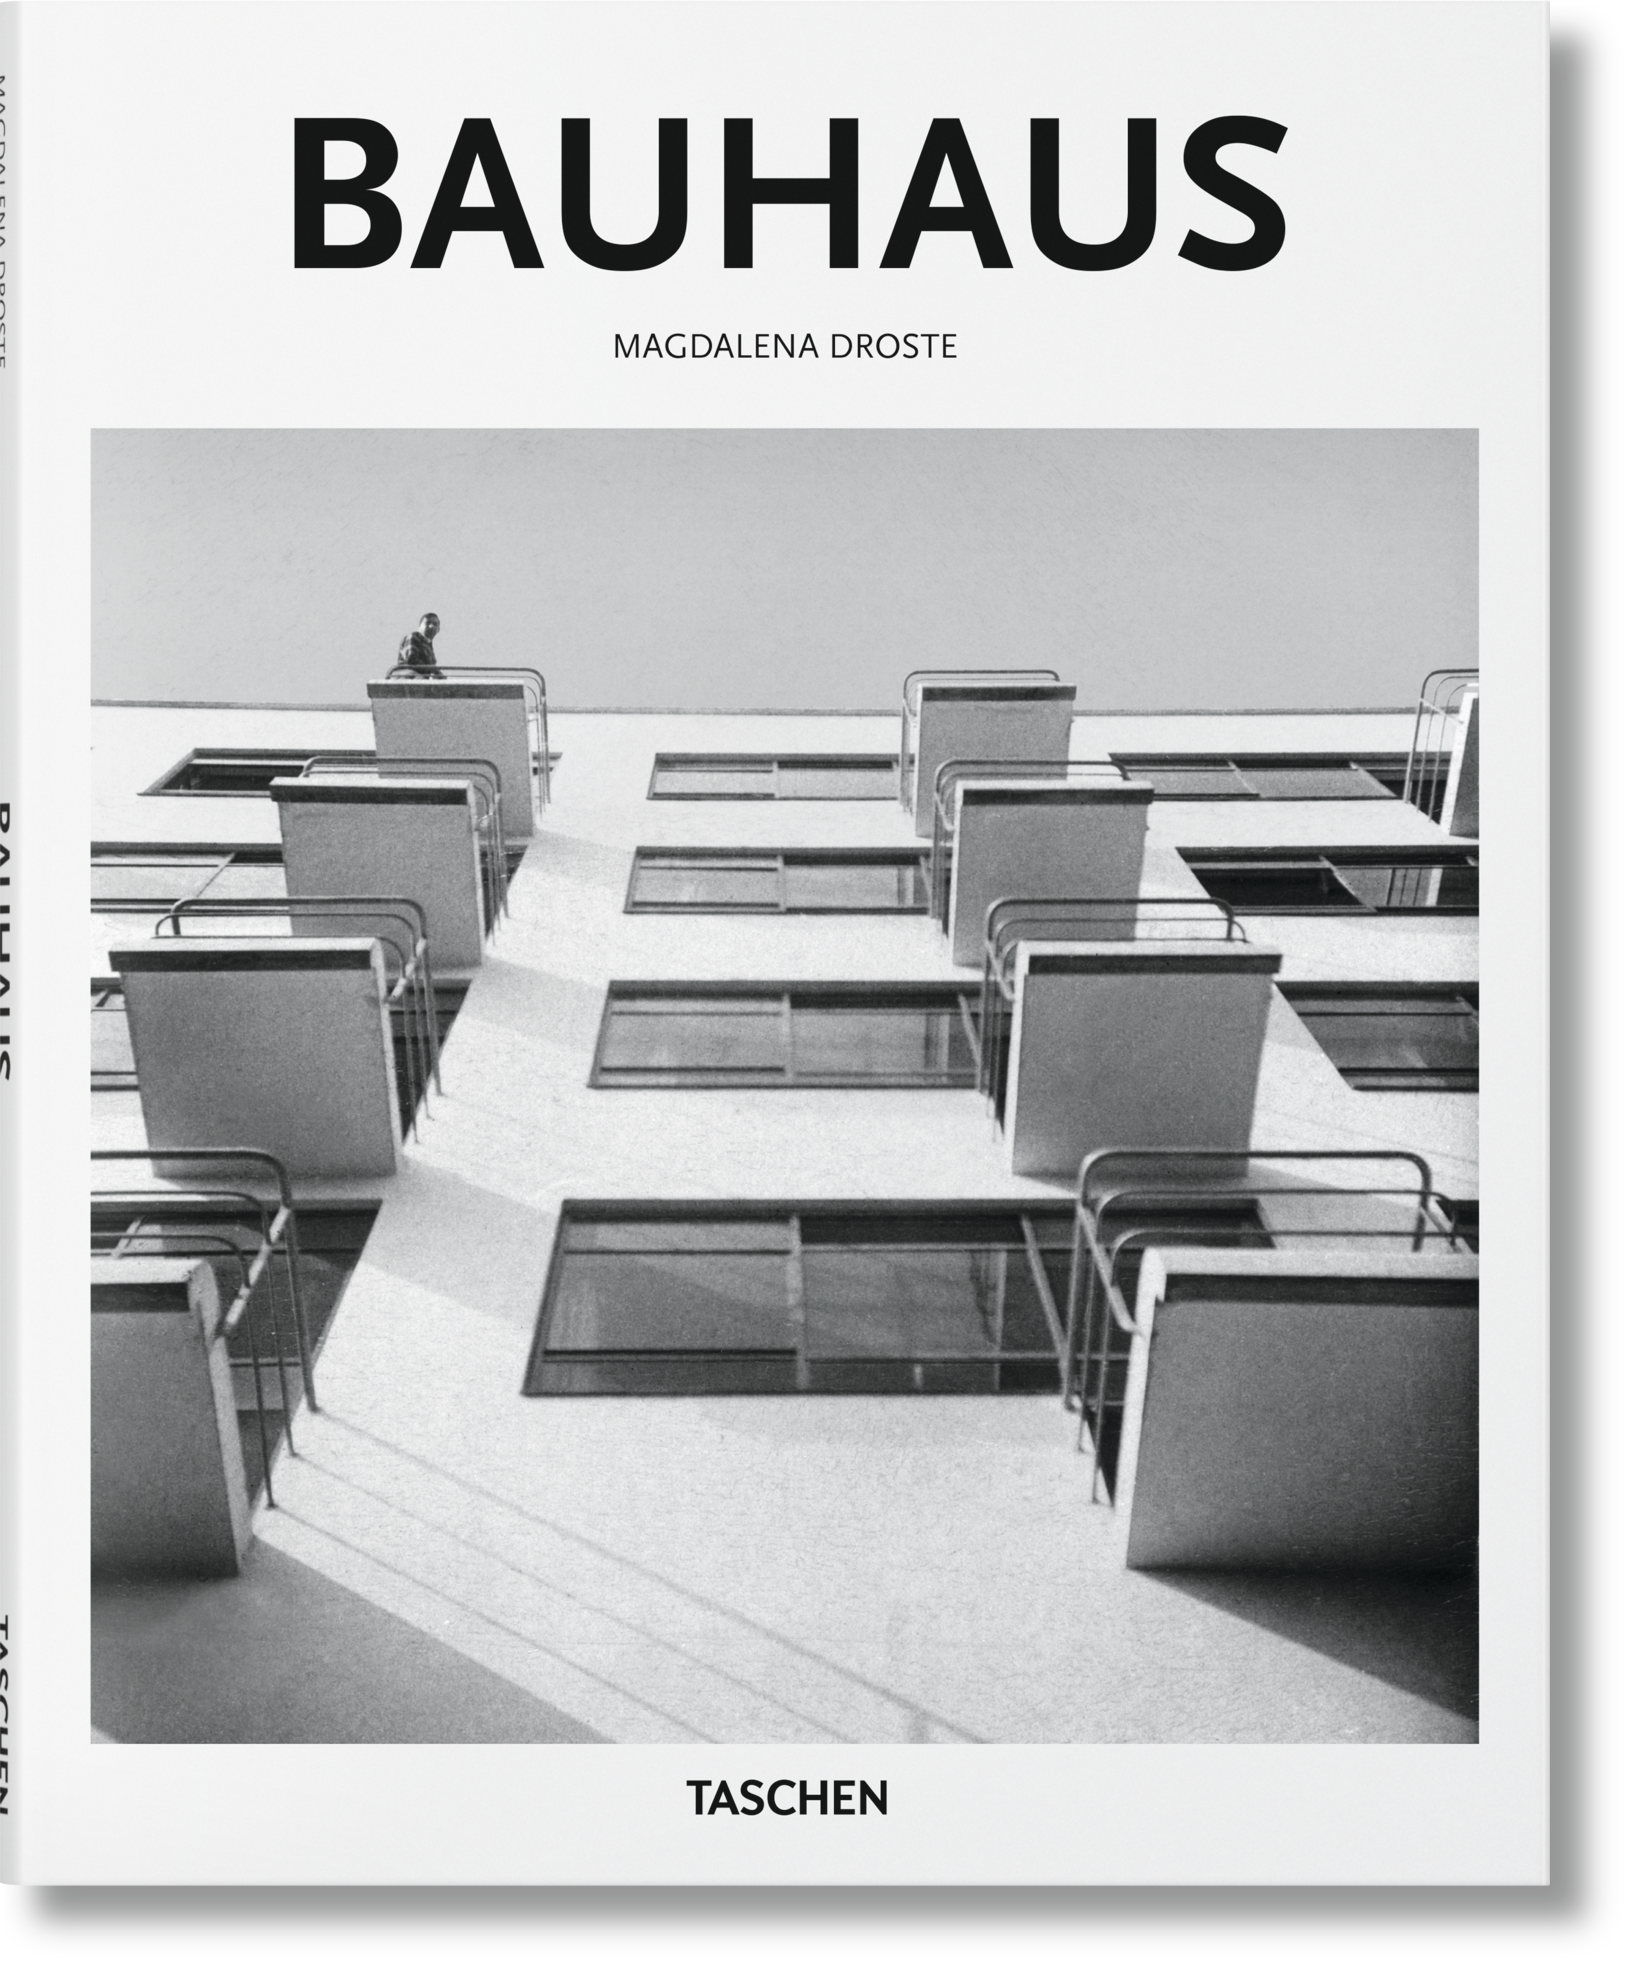 Bauhaus by Magdalena Droste - Taschen Basic Art